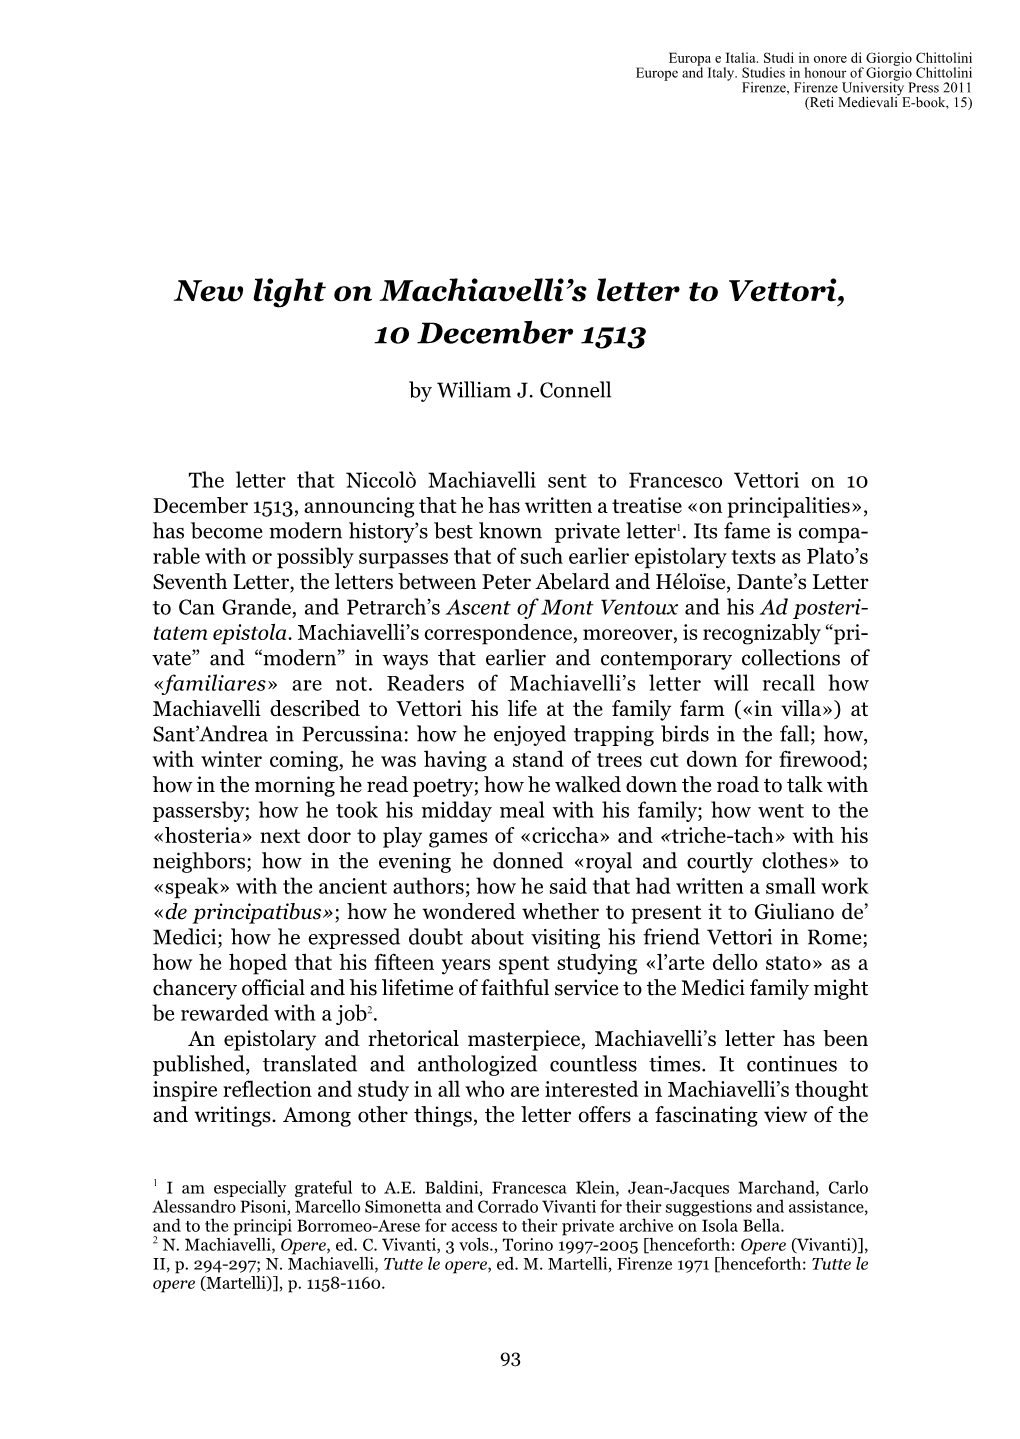 New Light on Machiavelli's Letter to Vettori, 10 December 1513